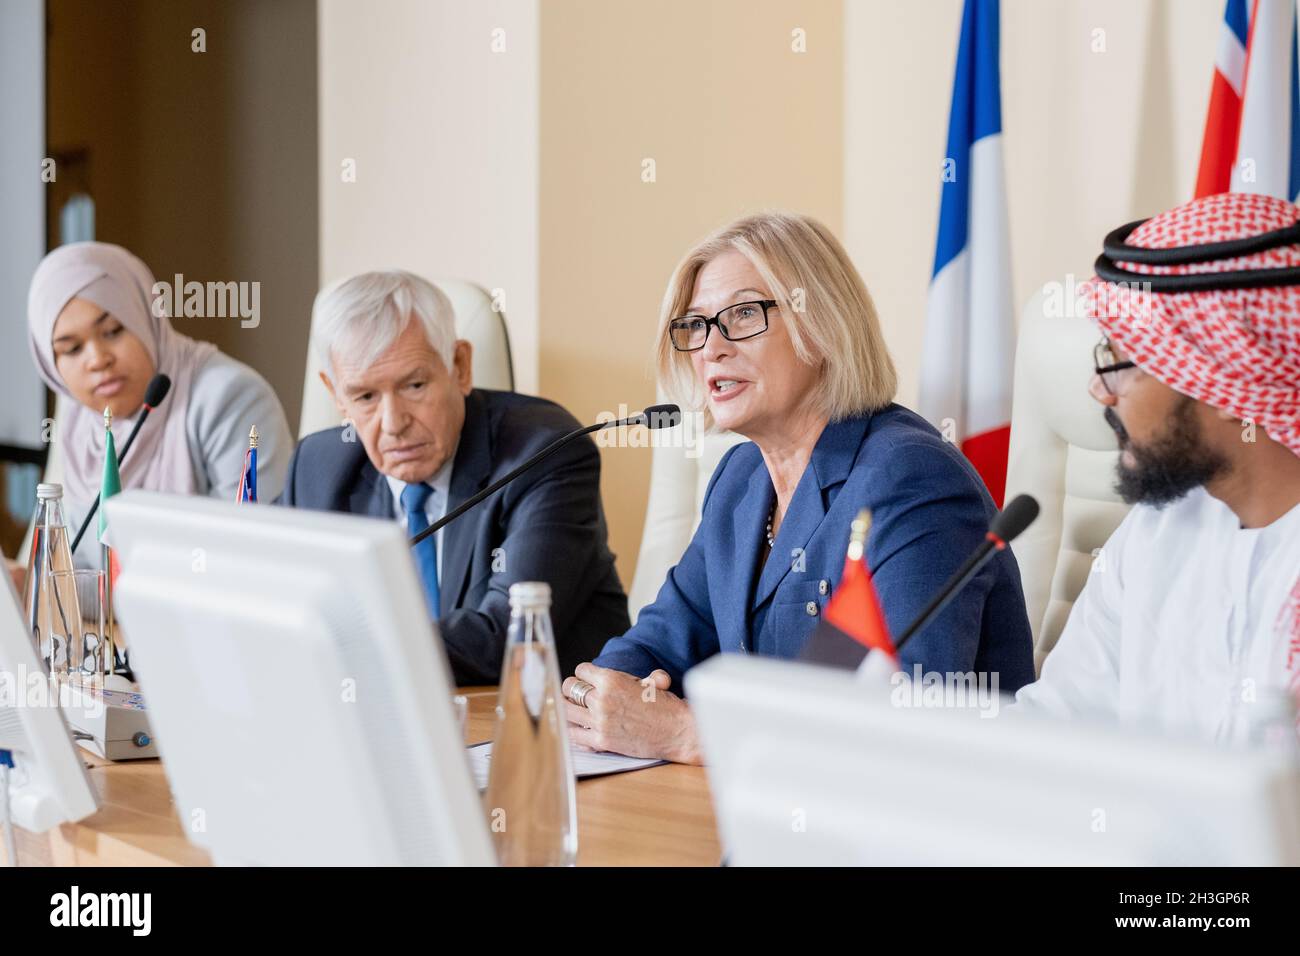 Donna caucasica matura e fiduciosa in occhiali seduti a tavola con altri politici e utilizzando il microfono durante la conferenza politica Foto Stock